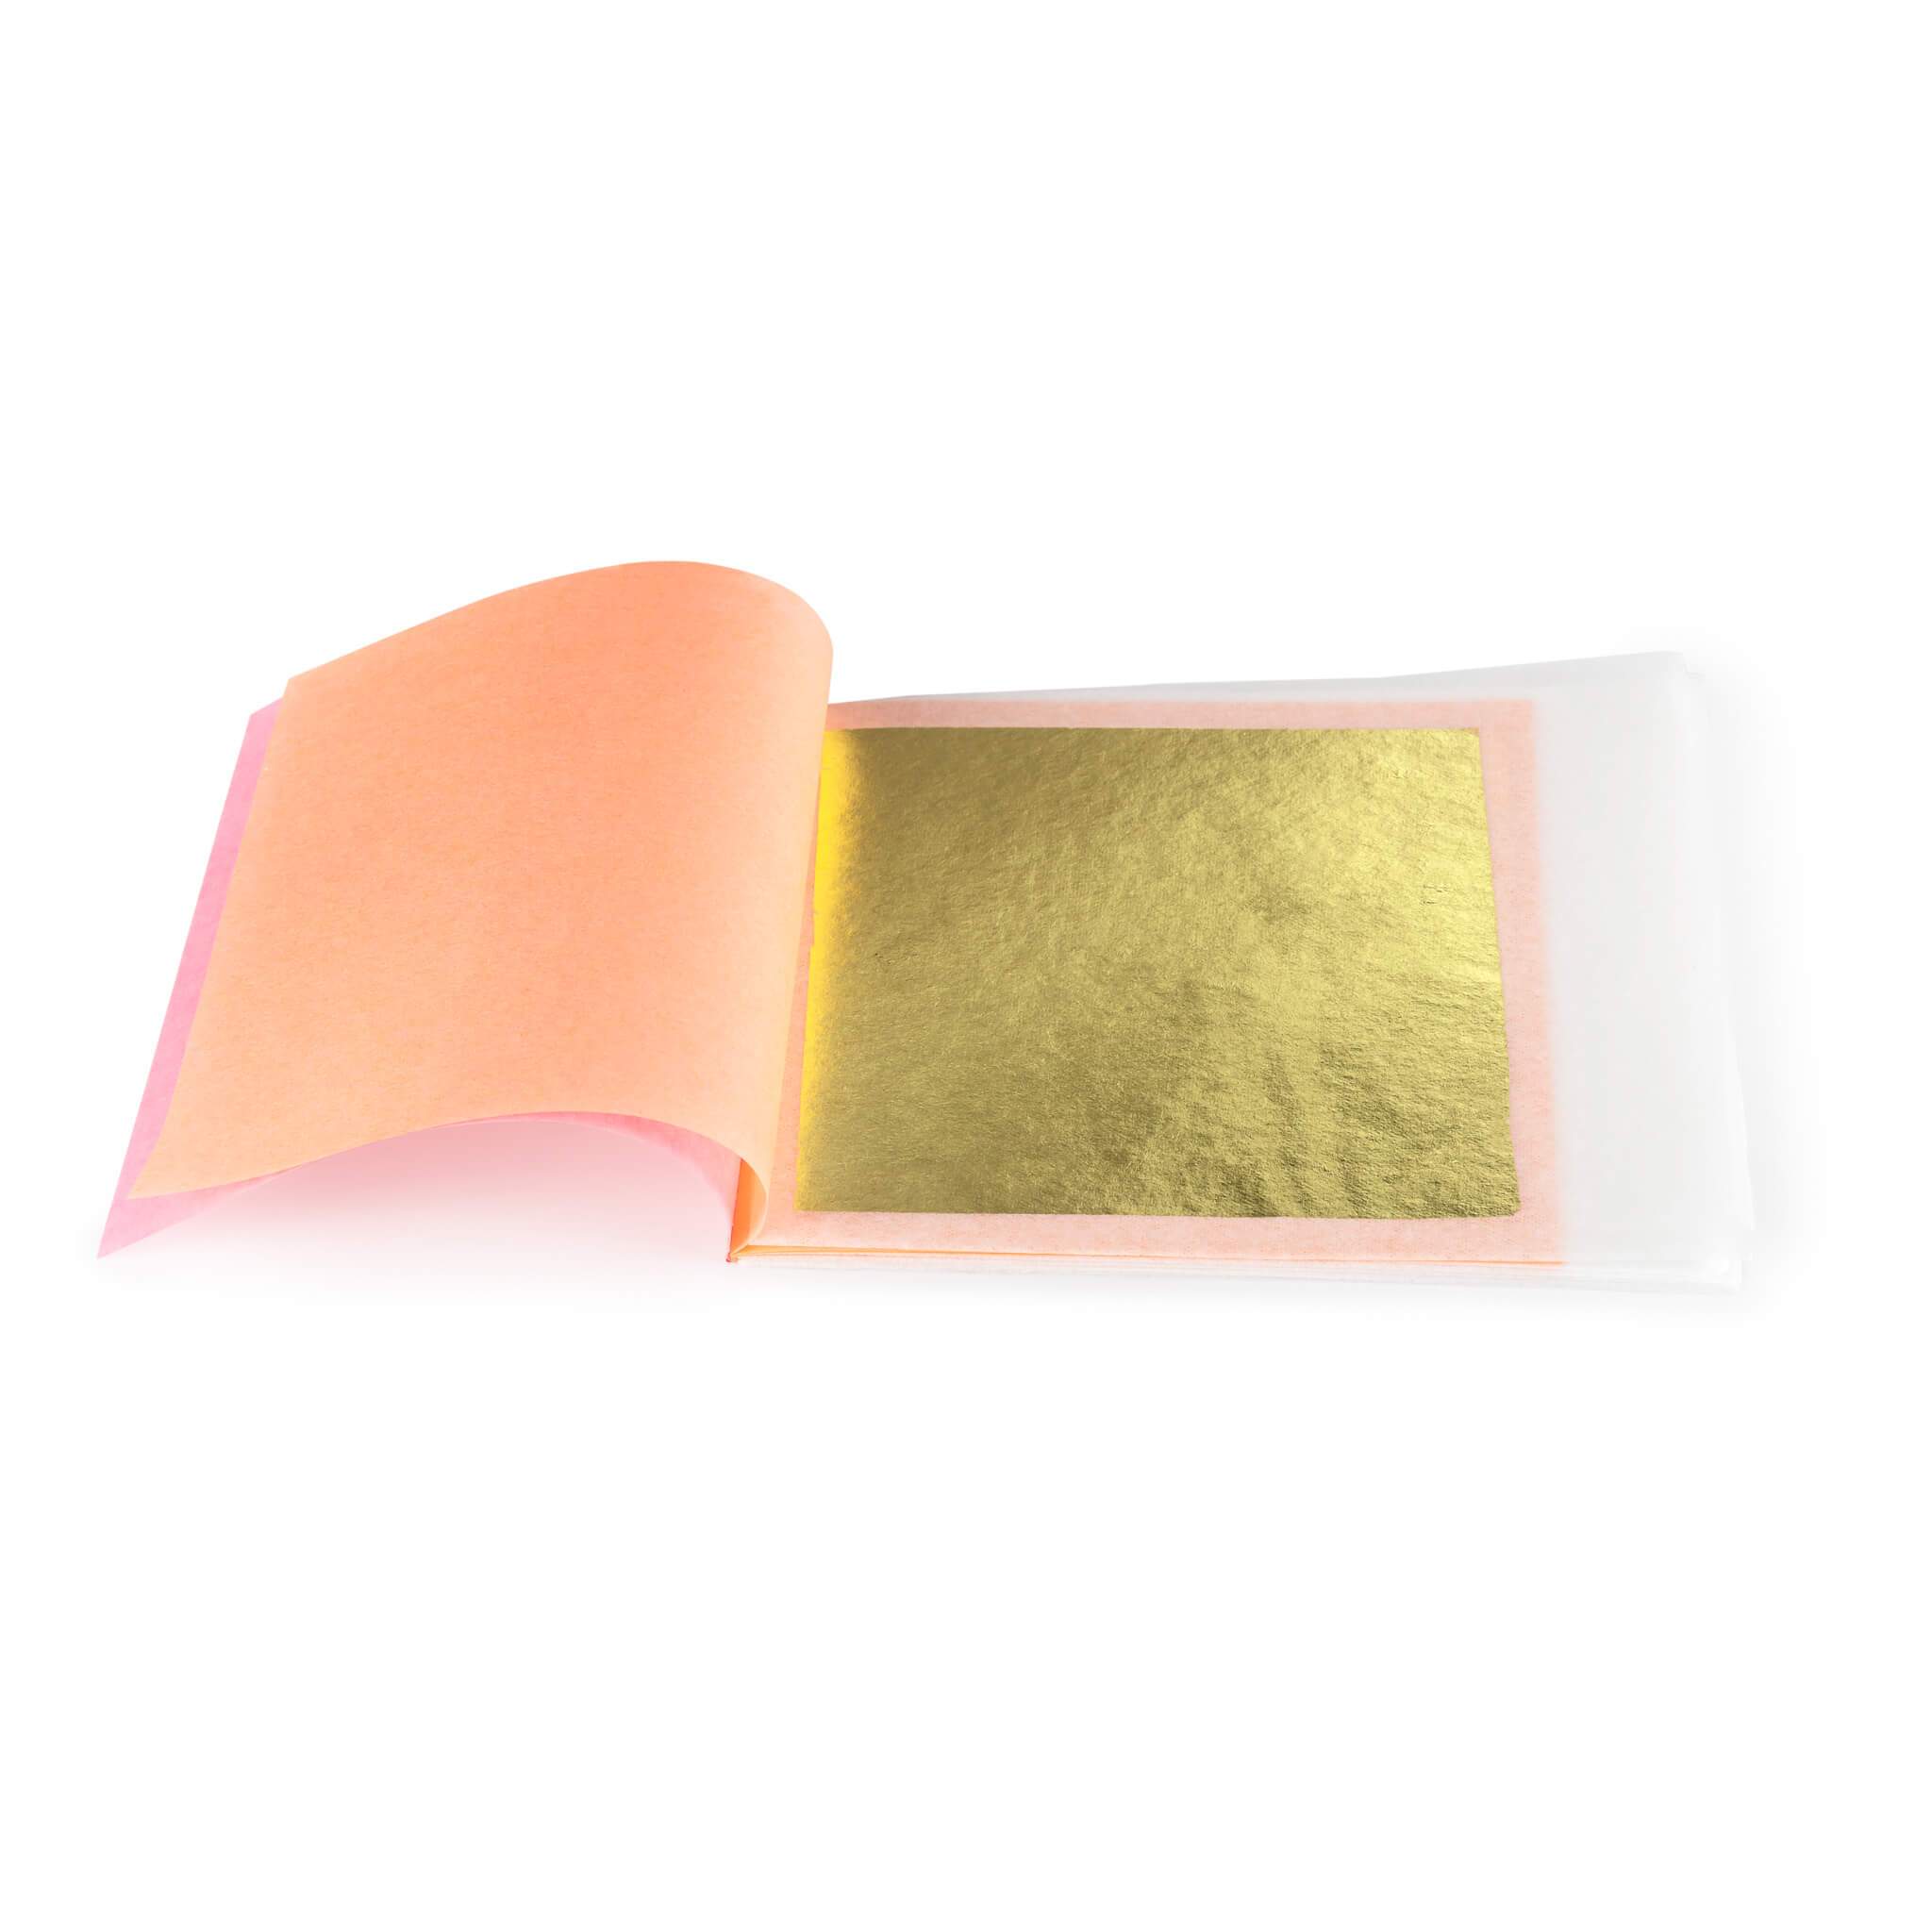 Hard Press Transfer Edible Gold Sheets - 24K Gold Foil Leaf for Cakes